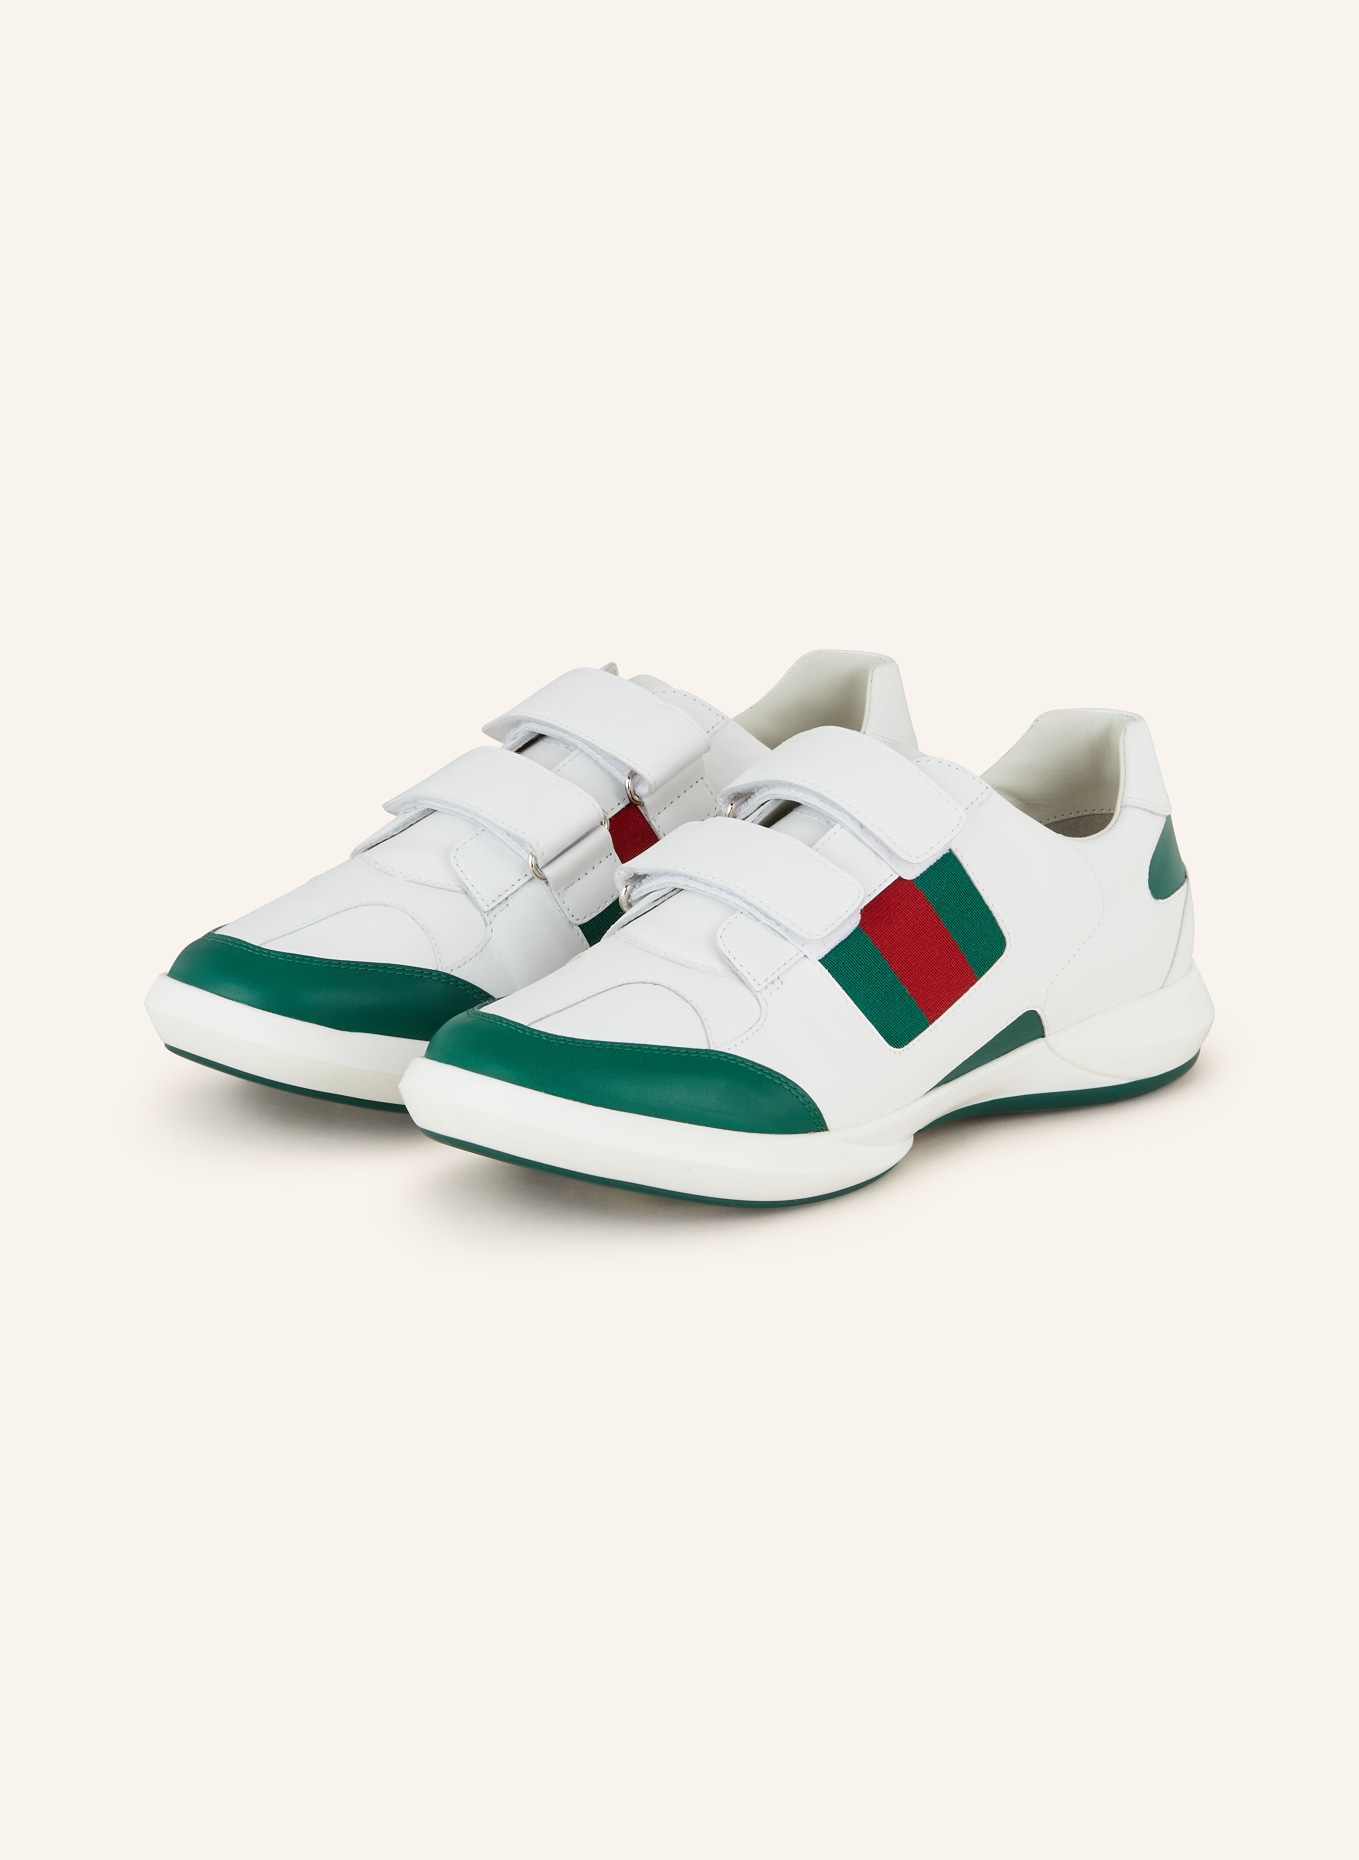 GUCCI Sneaker APOLLO, Farbe: WEISS/ DUNKELGRÜN/ DUNKELROT (Bild 1)